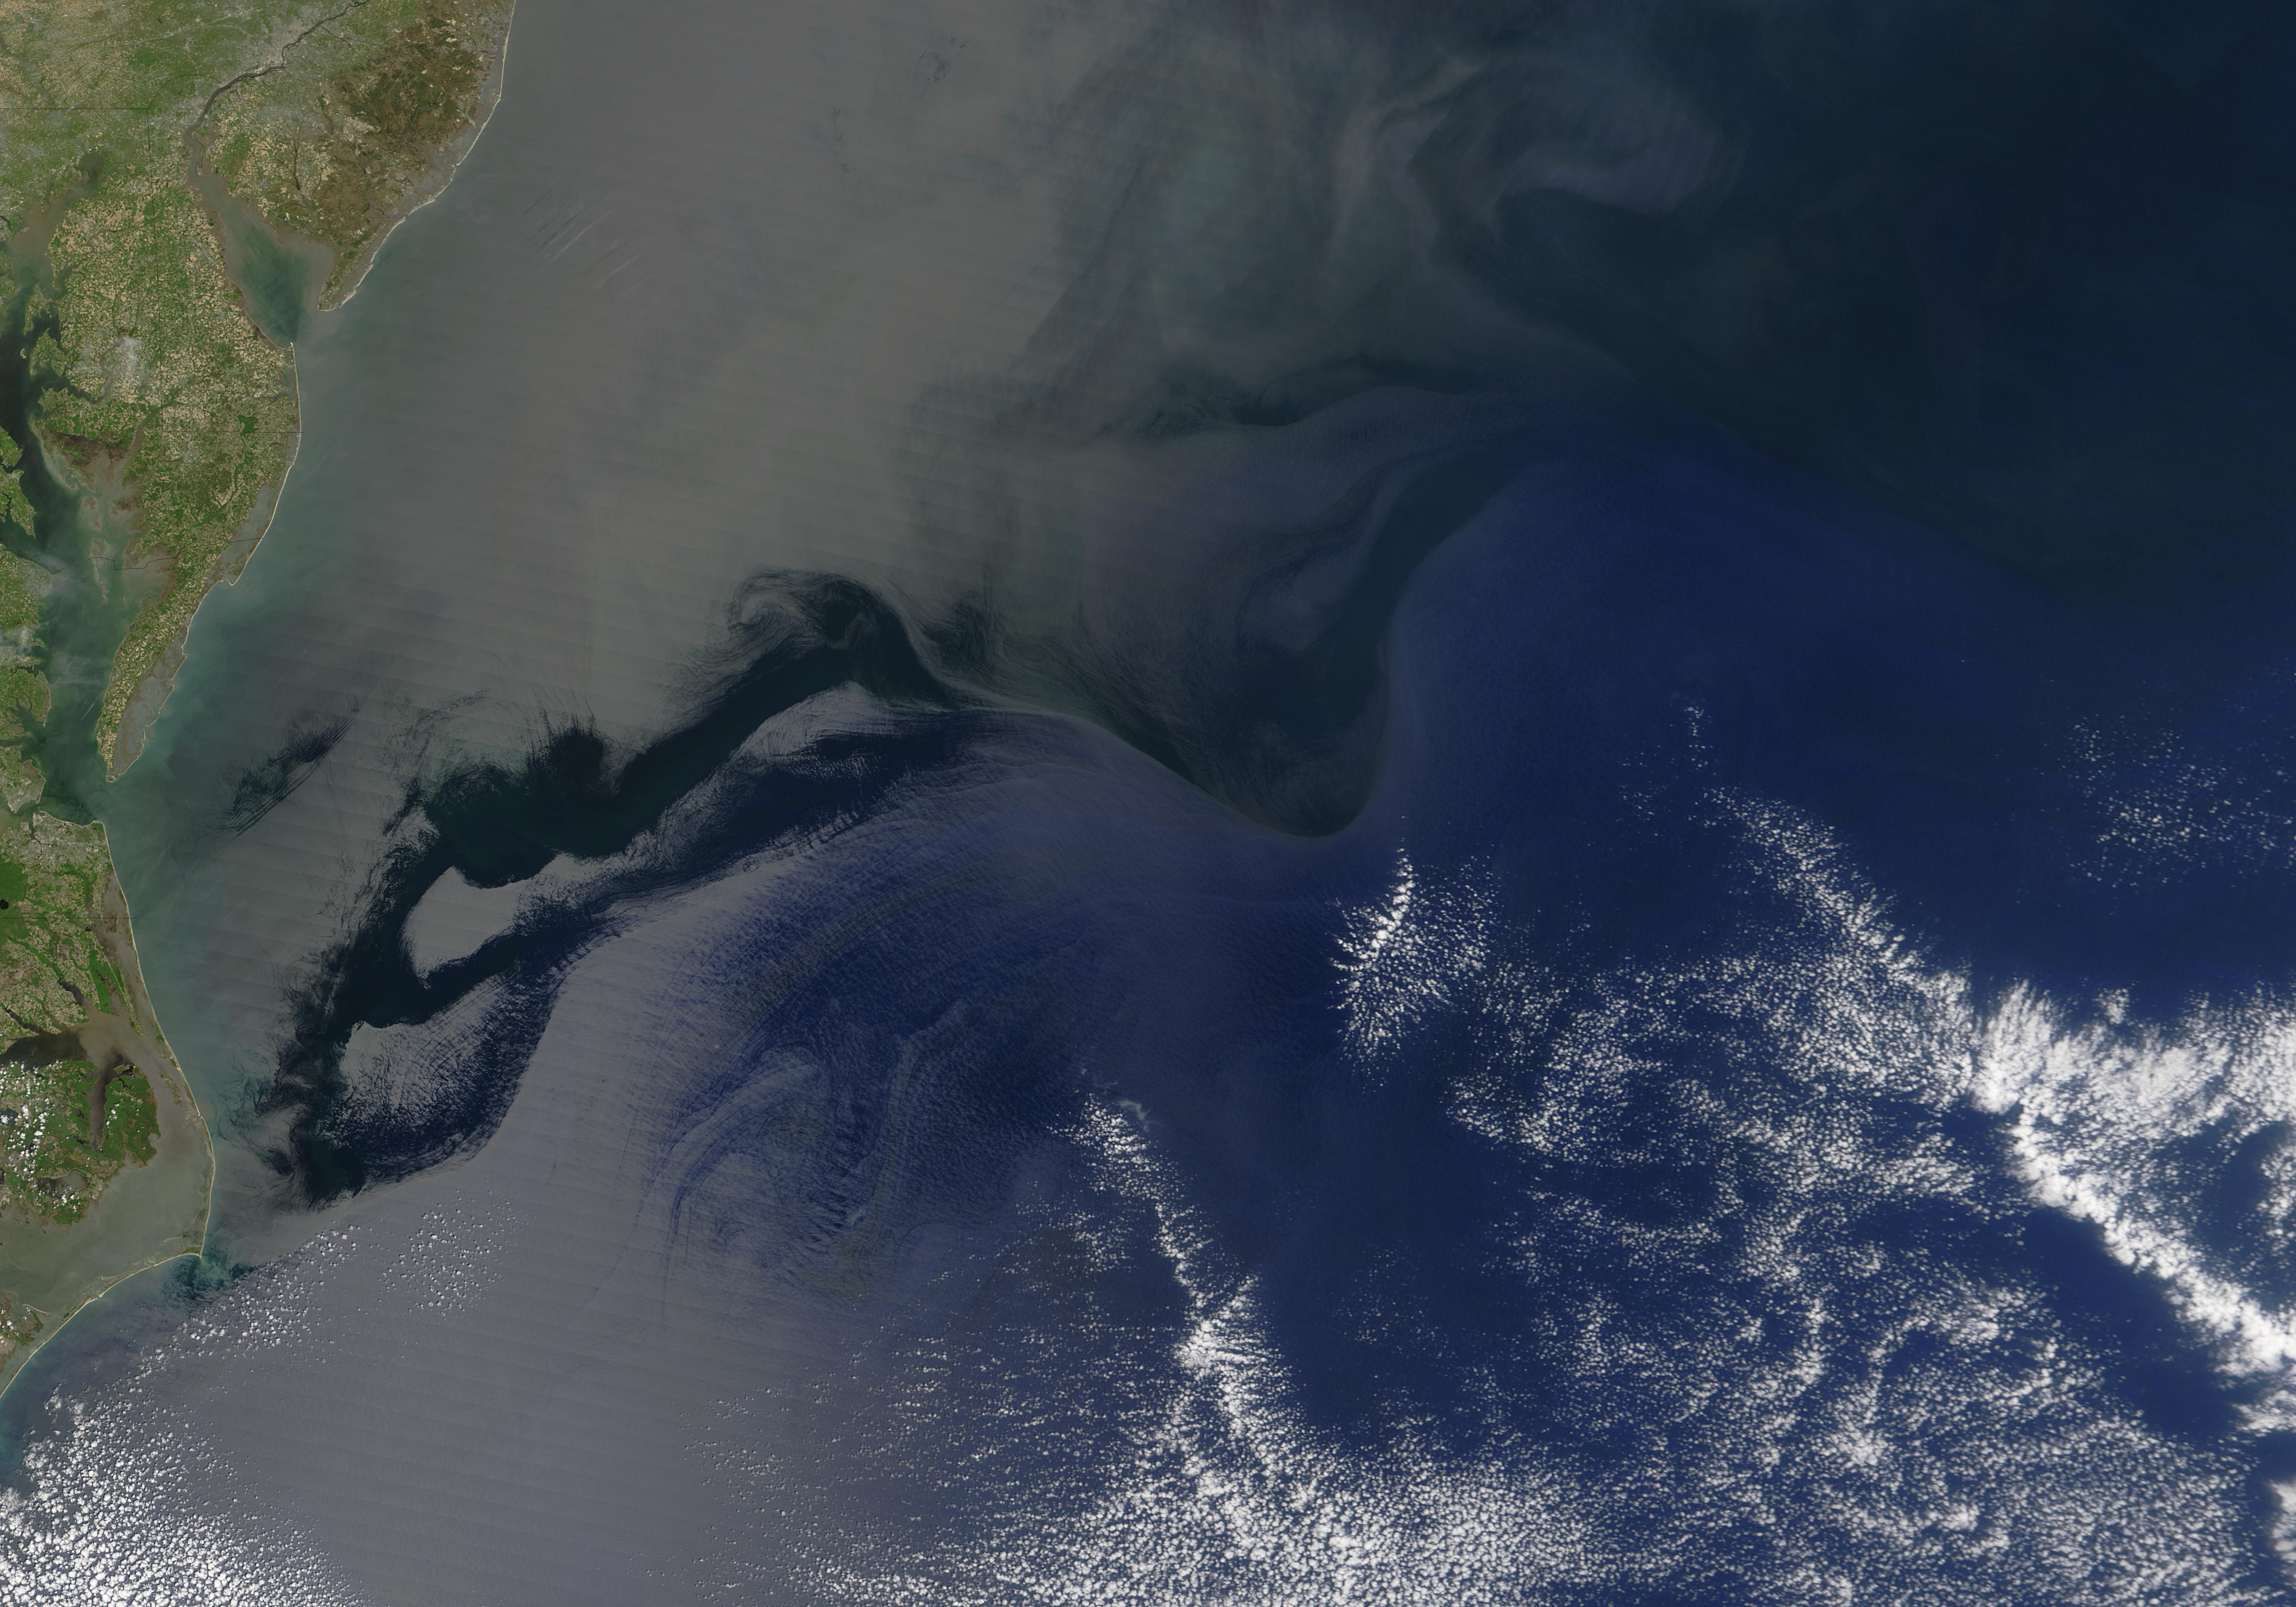 Atlantic Ocean - related image preview